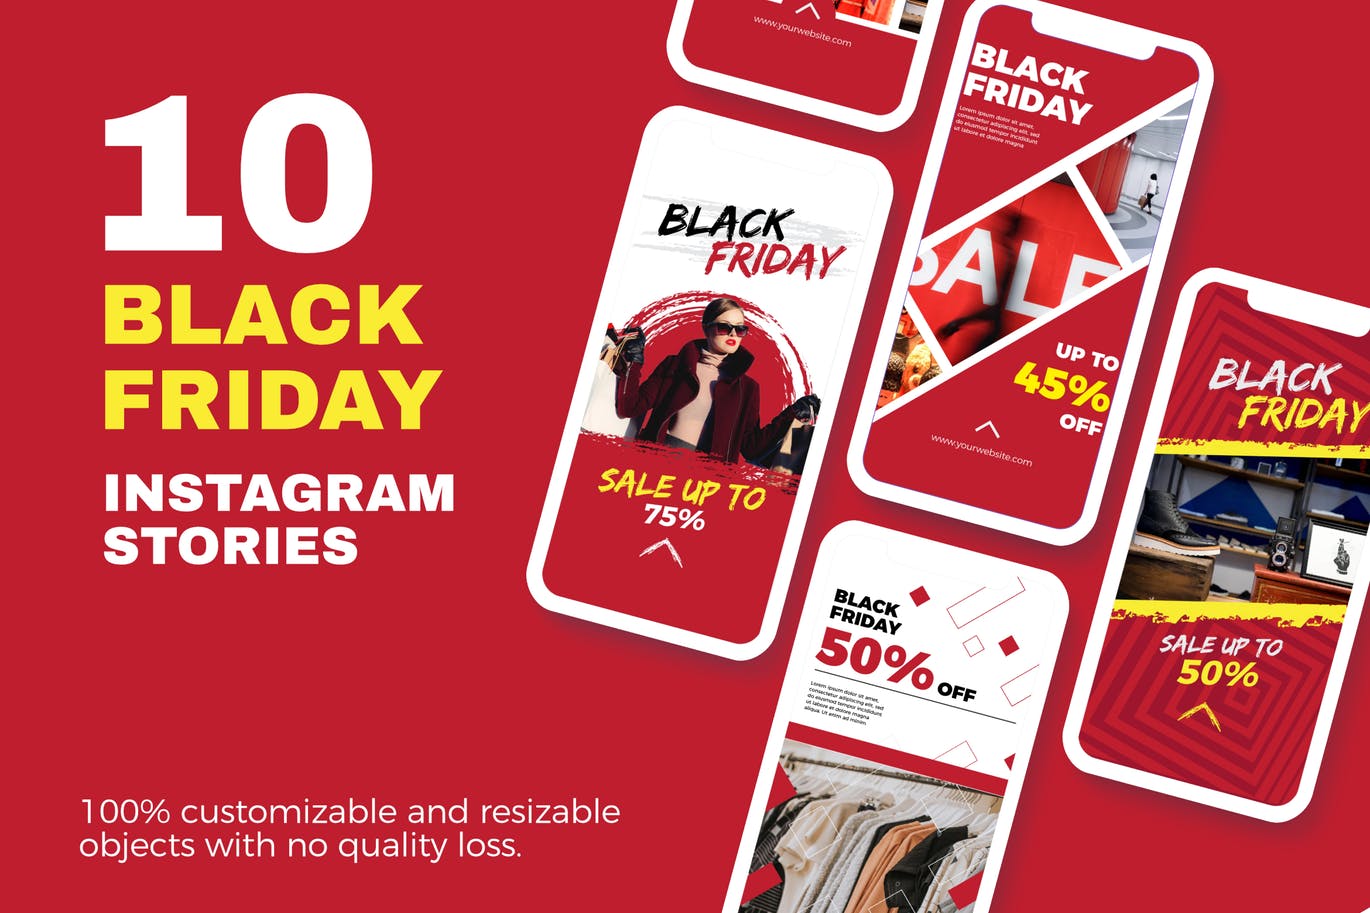 10款Instagram社交平台黑色星期五促销广告设计模板第一素材精选 Black Friday Instagram Stories插图